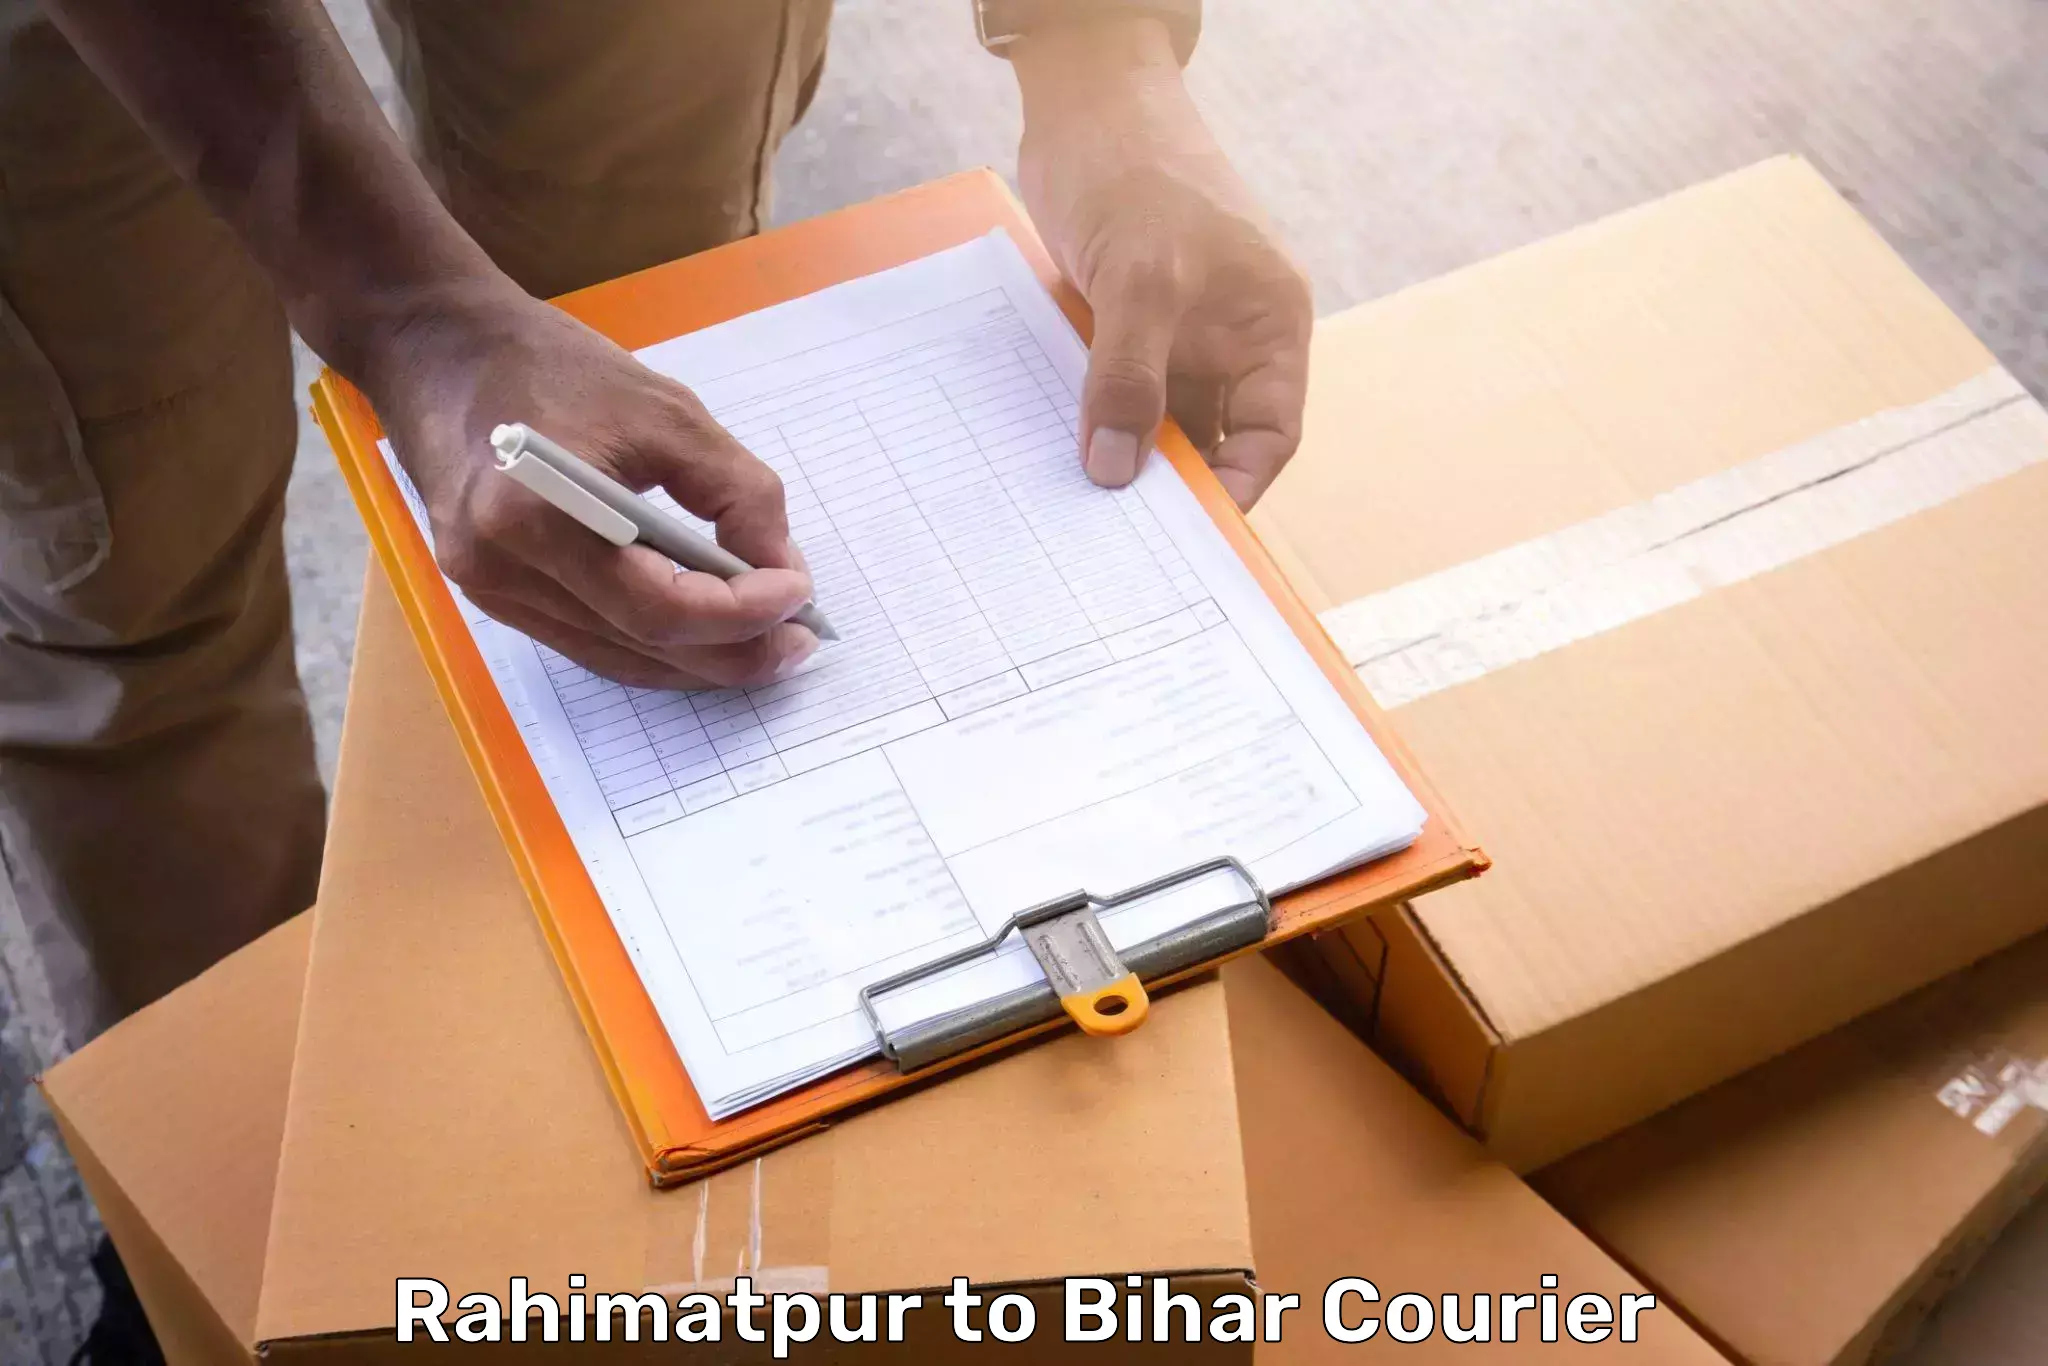 Luggage forwarding service Rahimatpur to Motipur